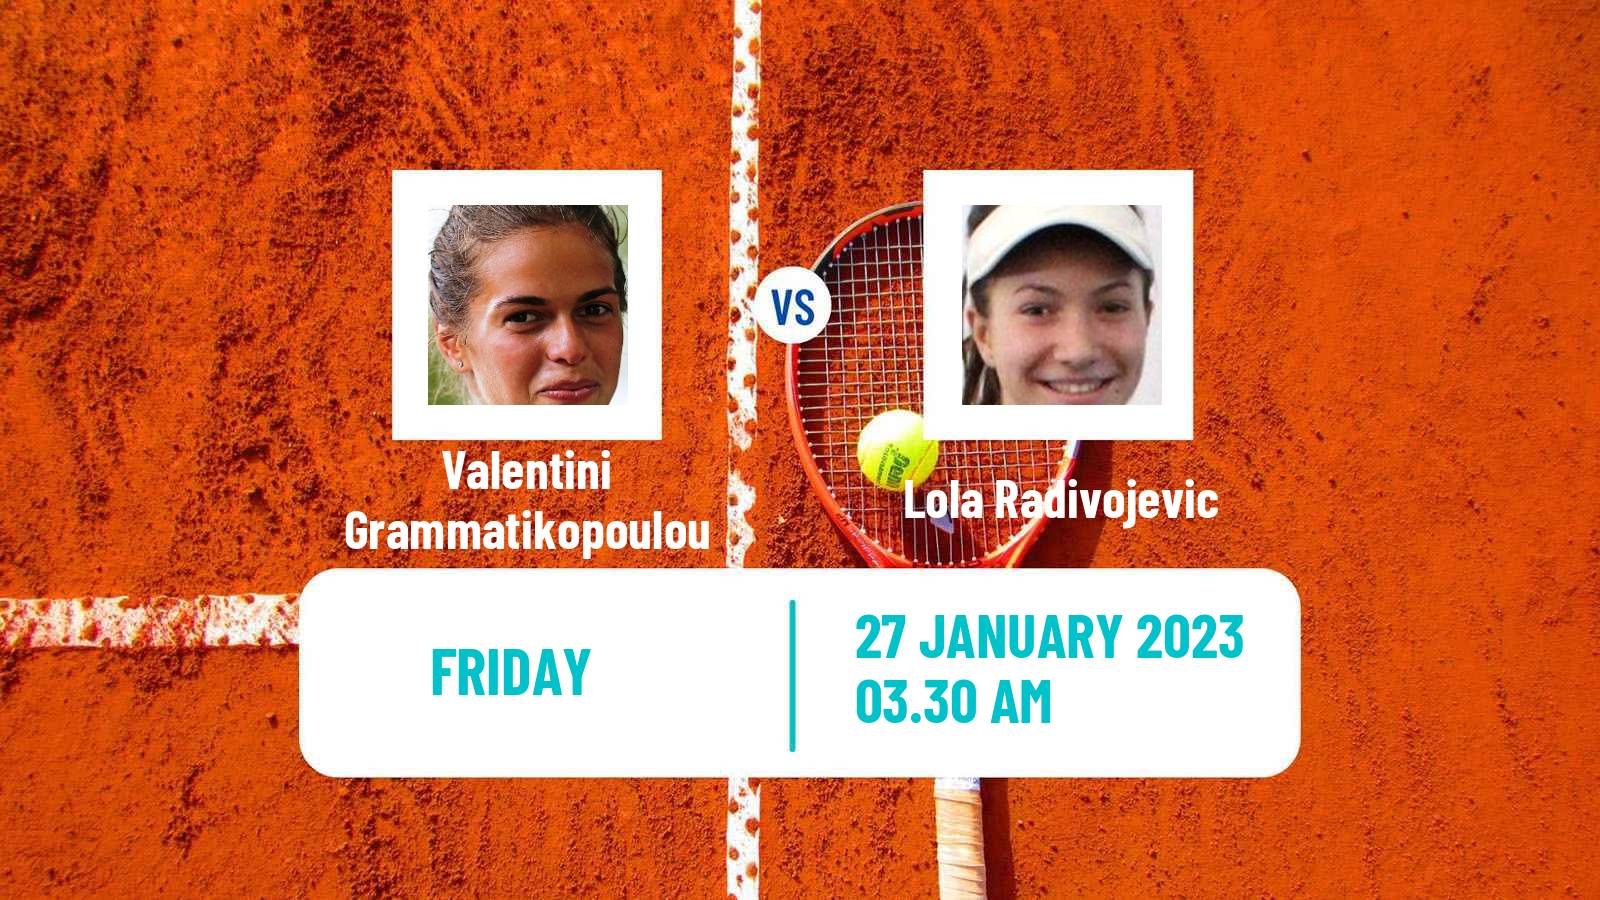 Tennis ITF Tournaments Valentini Grammatikopoulou - Lola Radivojevic